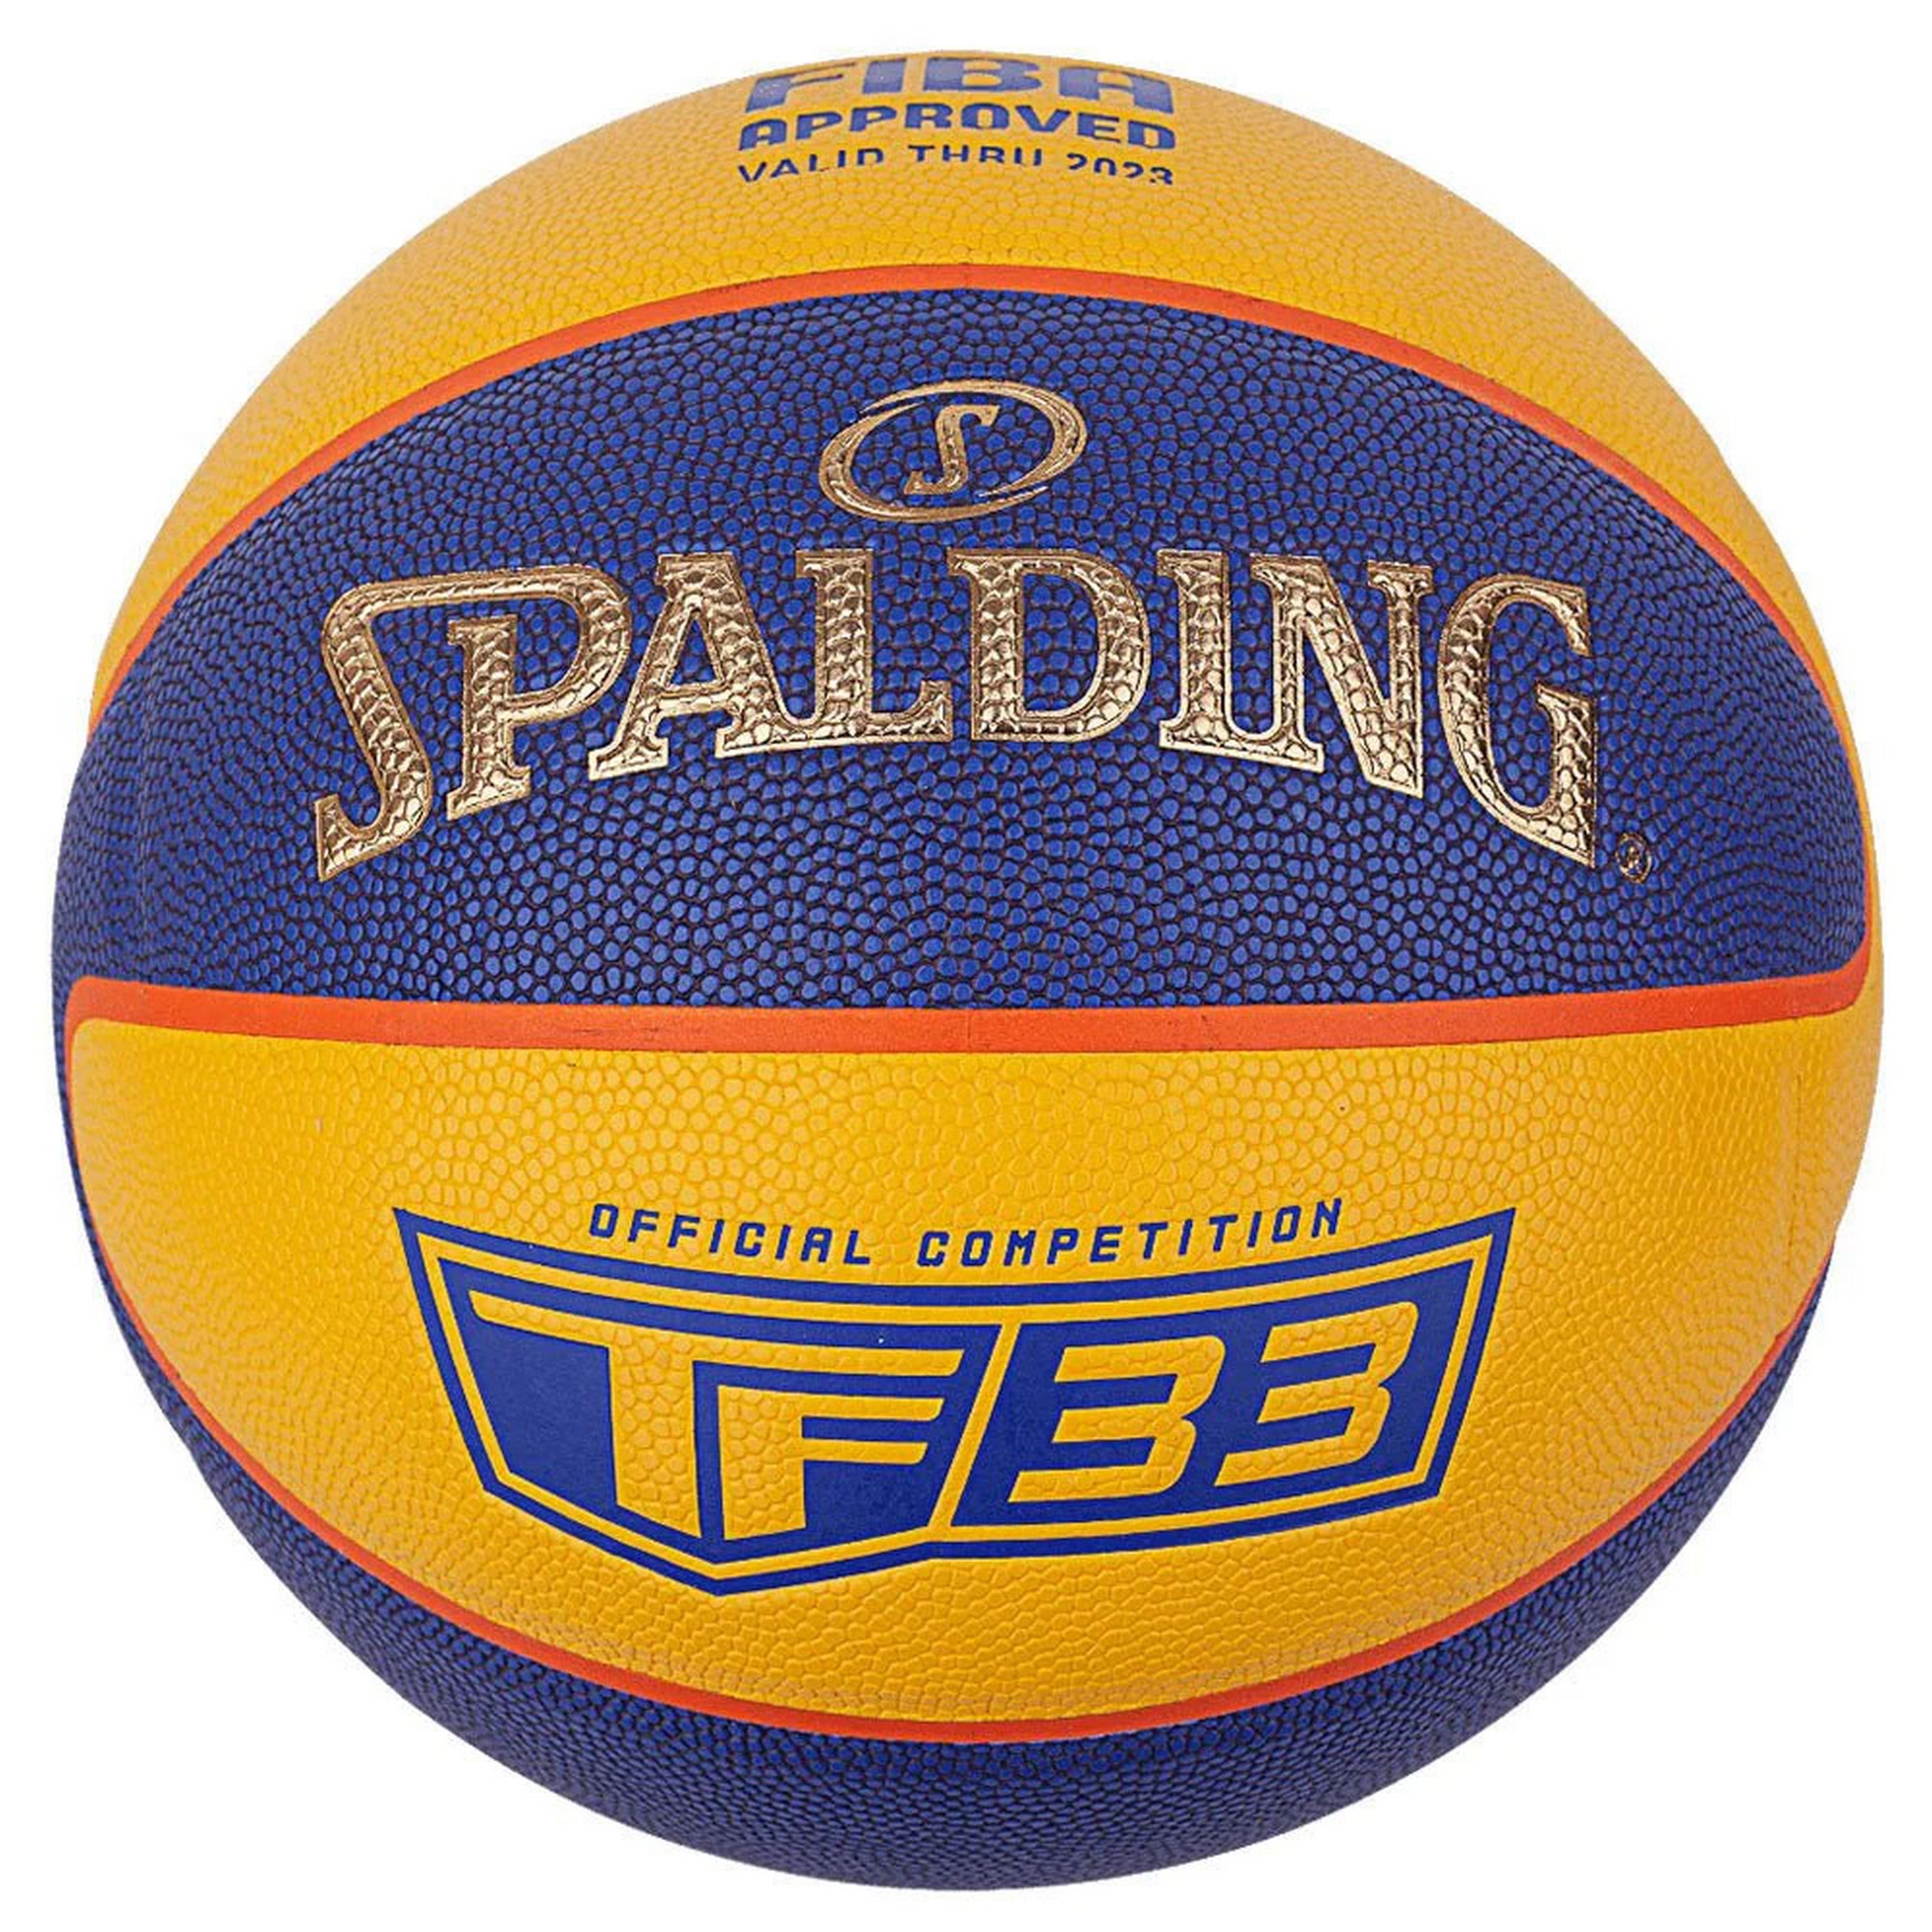   Spalding TF-33 Gold, FIBA Approved 76862z .6